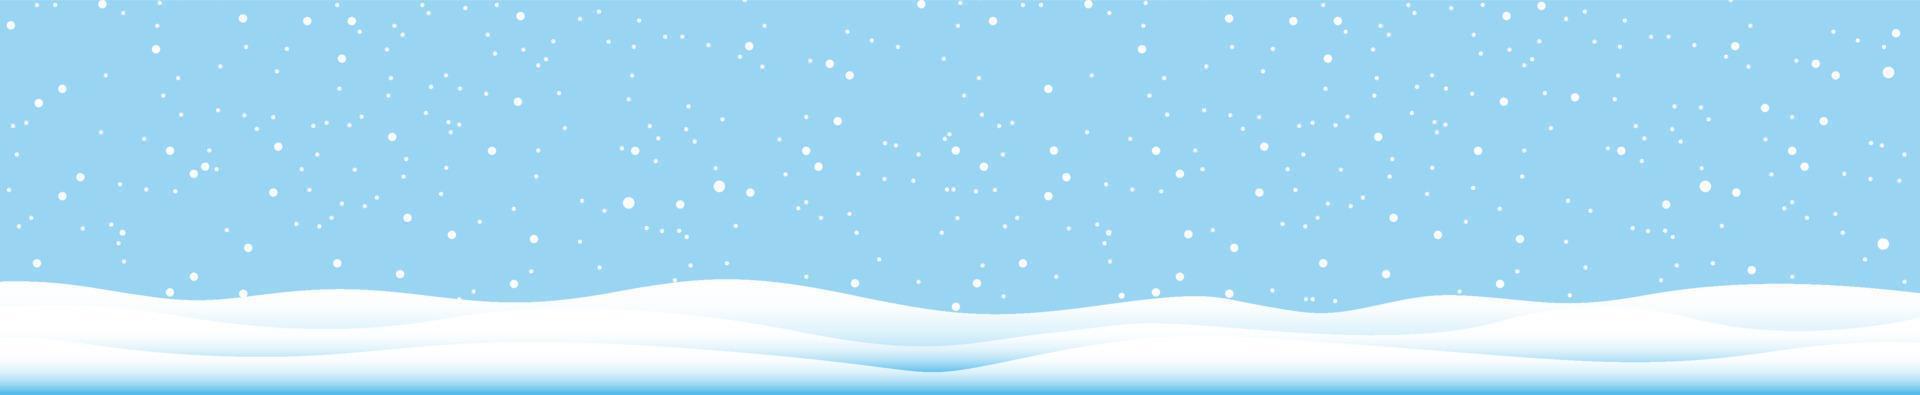 flocons de neige et fond d'hiver, paysage d'hiver, bannière horizontale, illustration vectorielle. vecteur